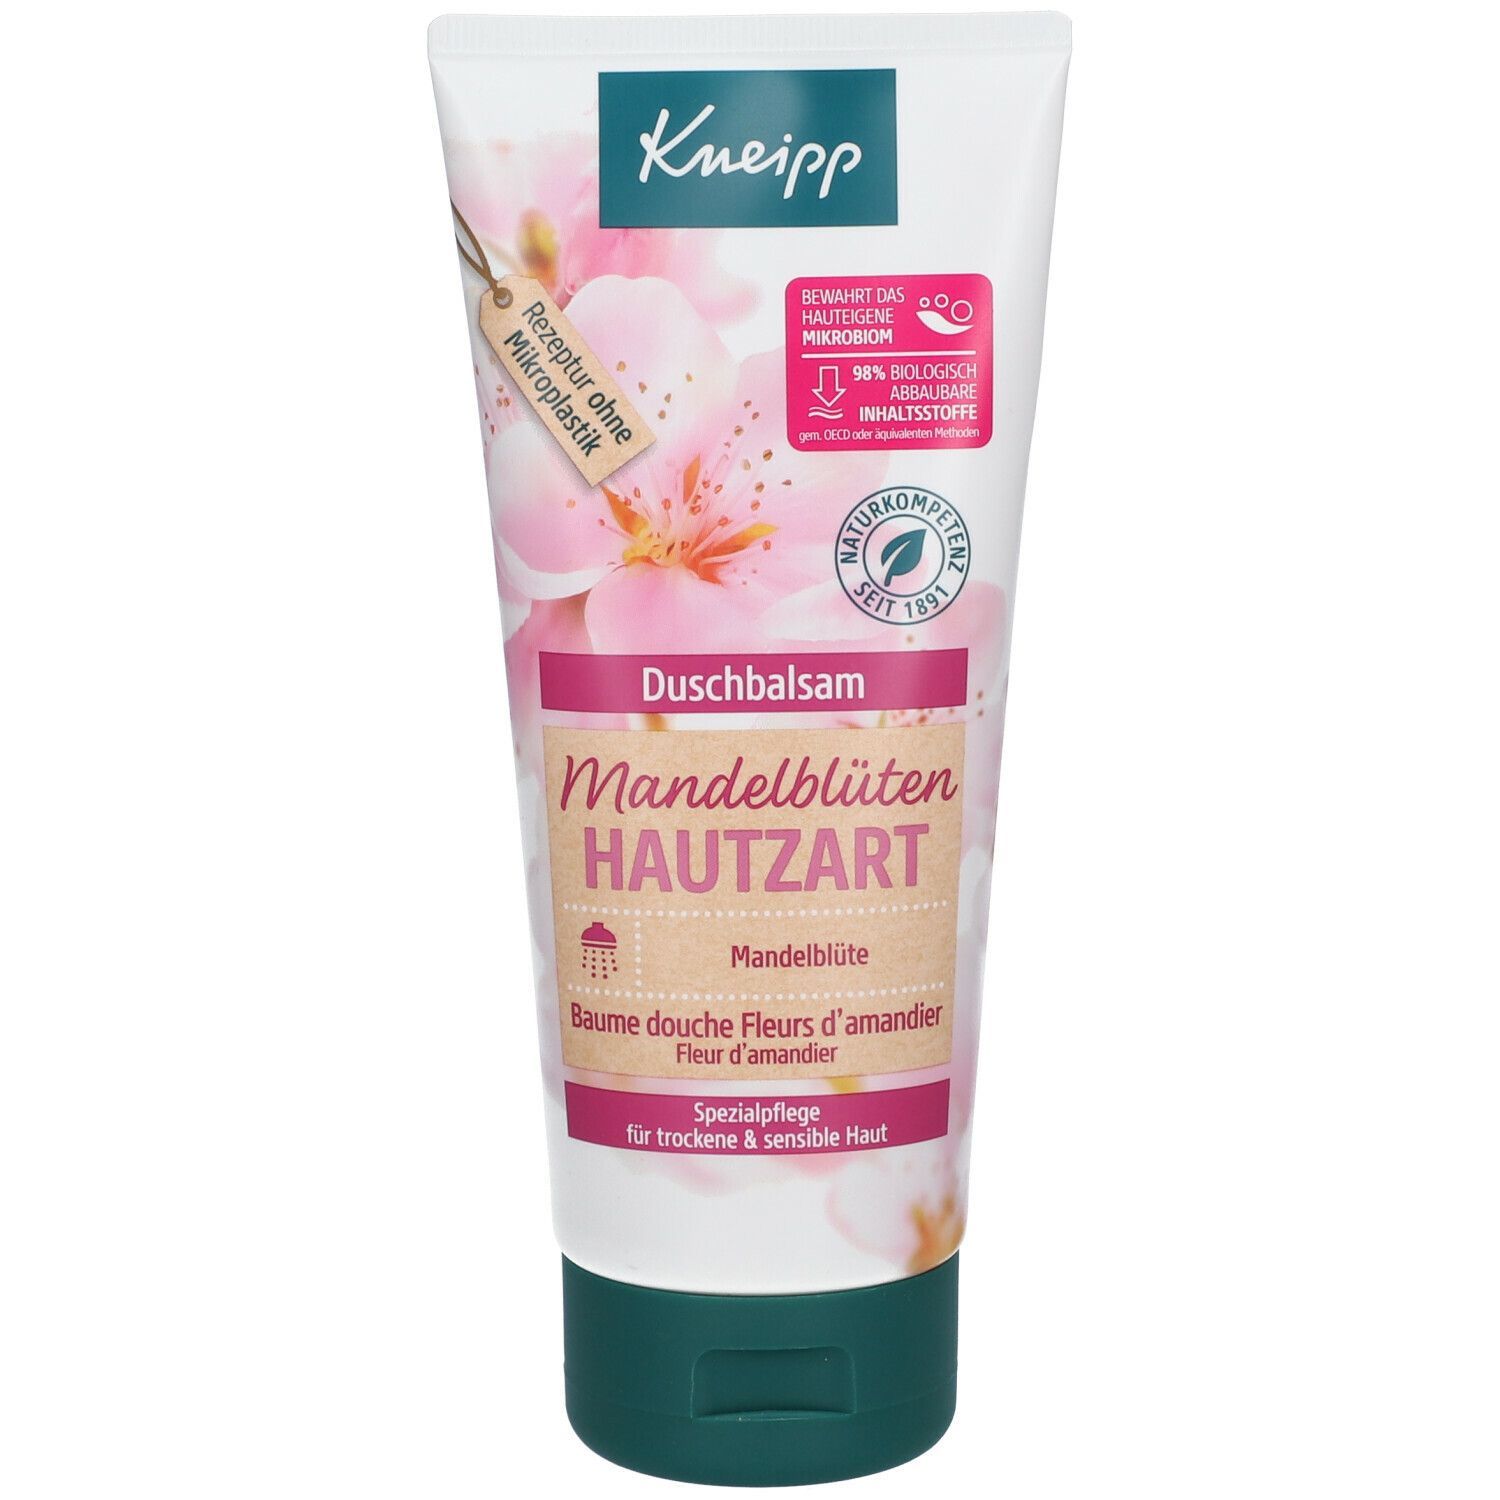 Kneipp® Duschbalsam Mandelblüten Hautzart